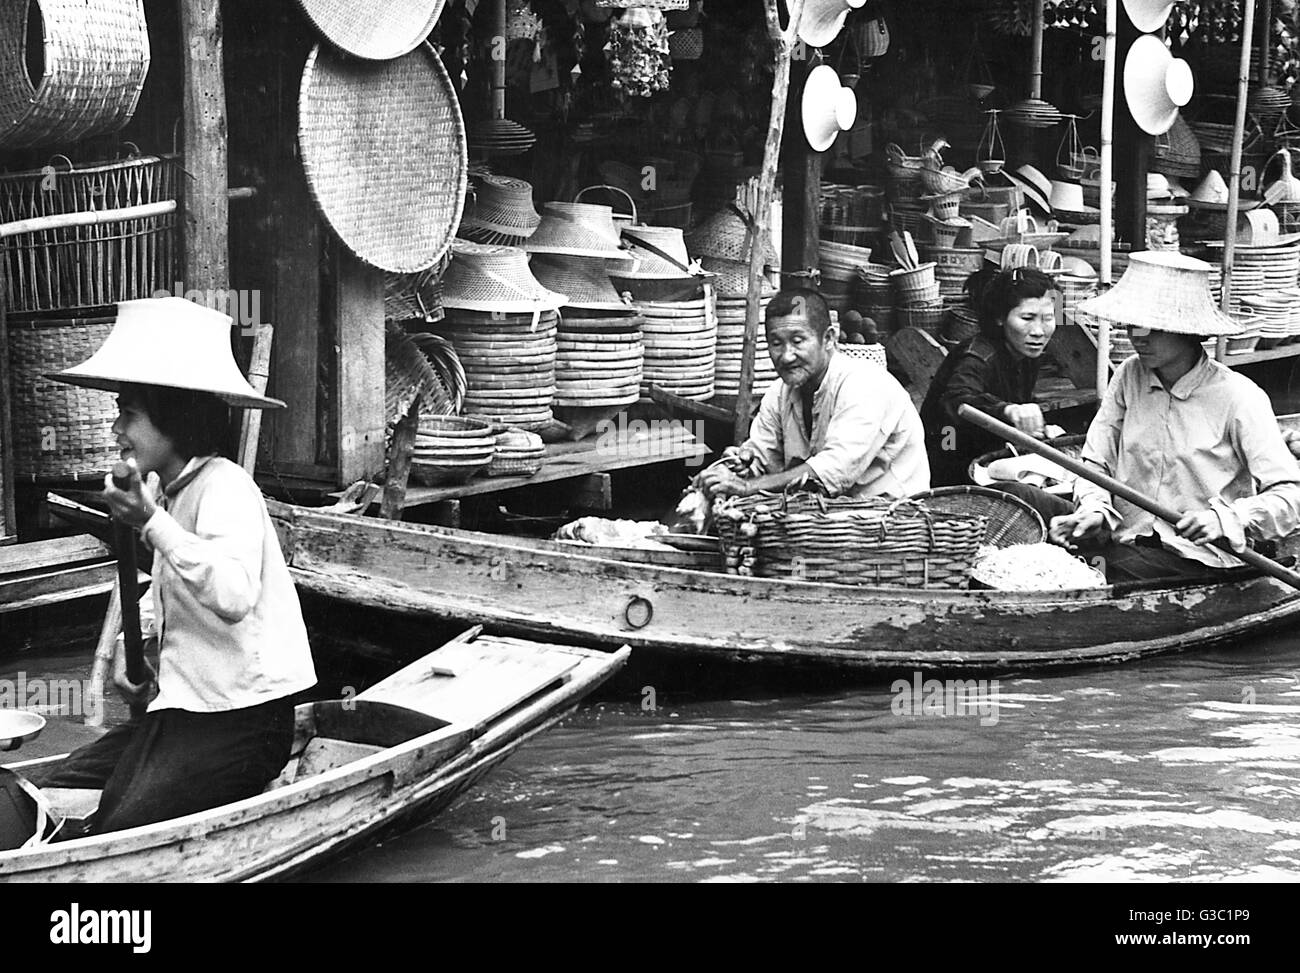 Commerçants flottants, Bangkok, Thaïlande Banque D'Images